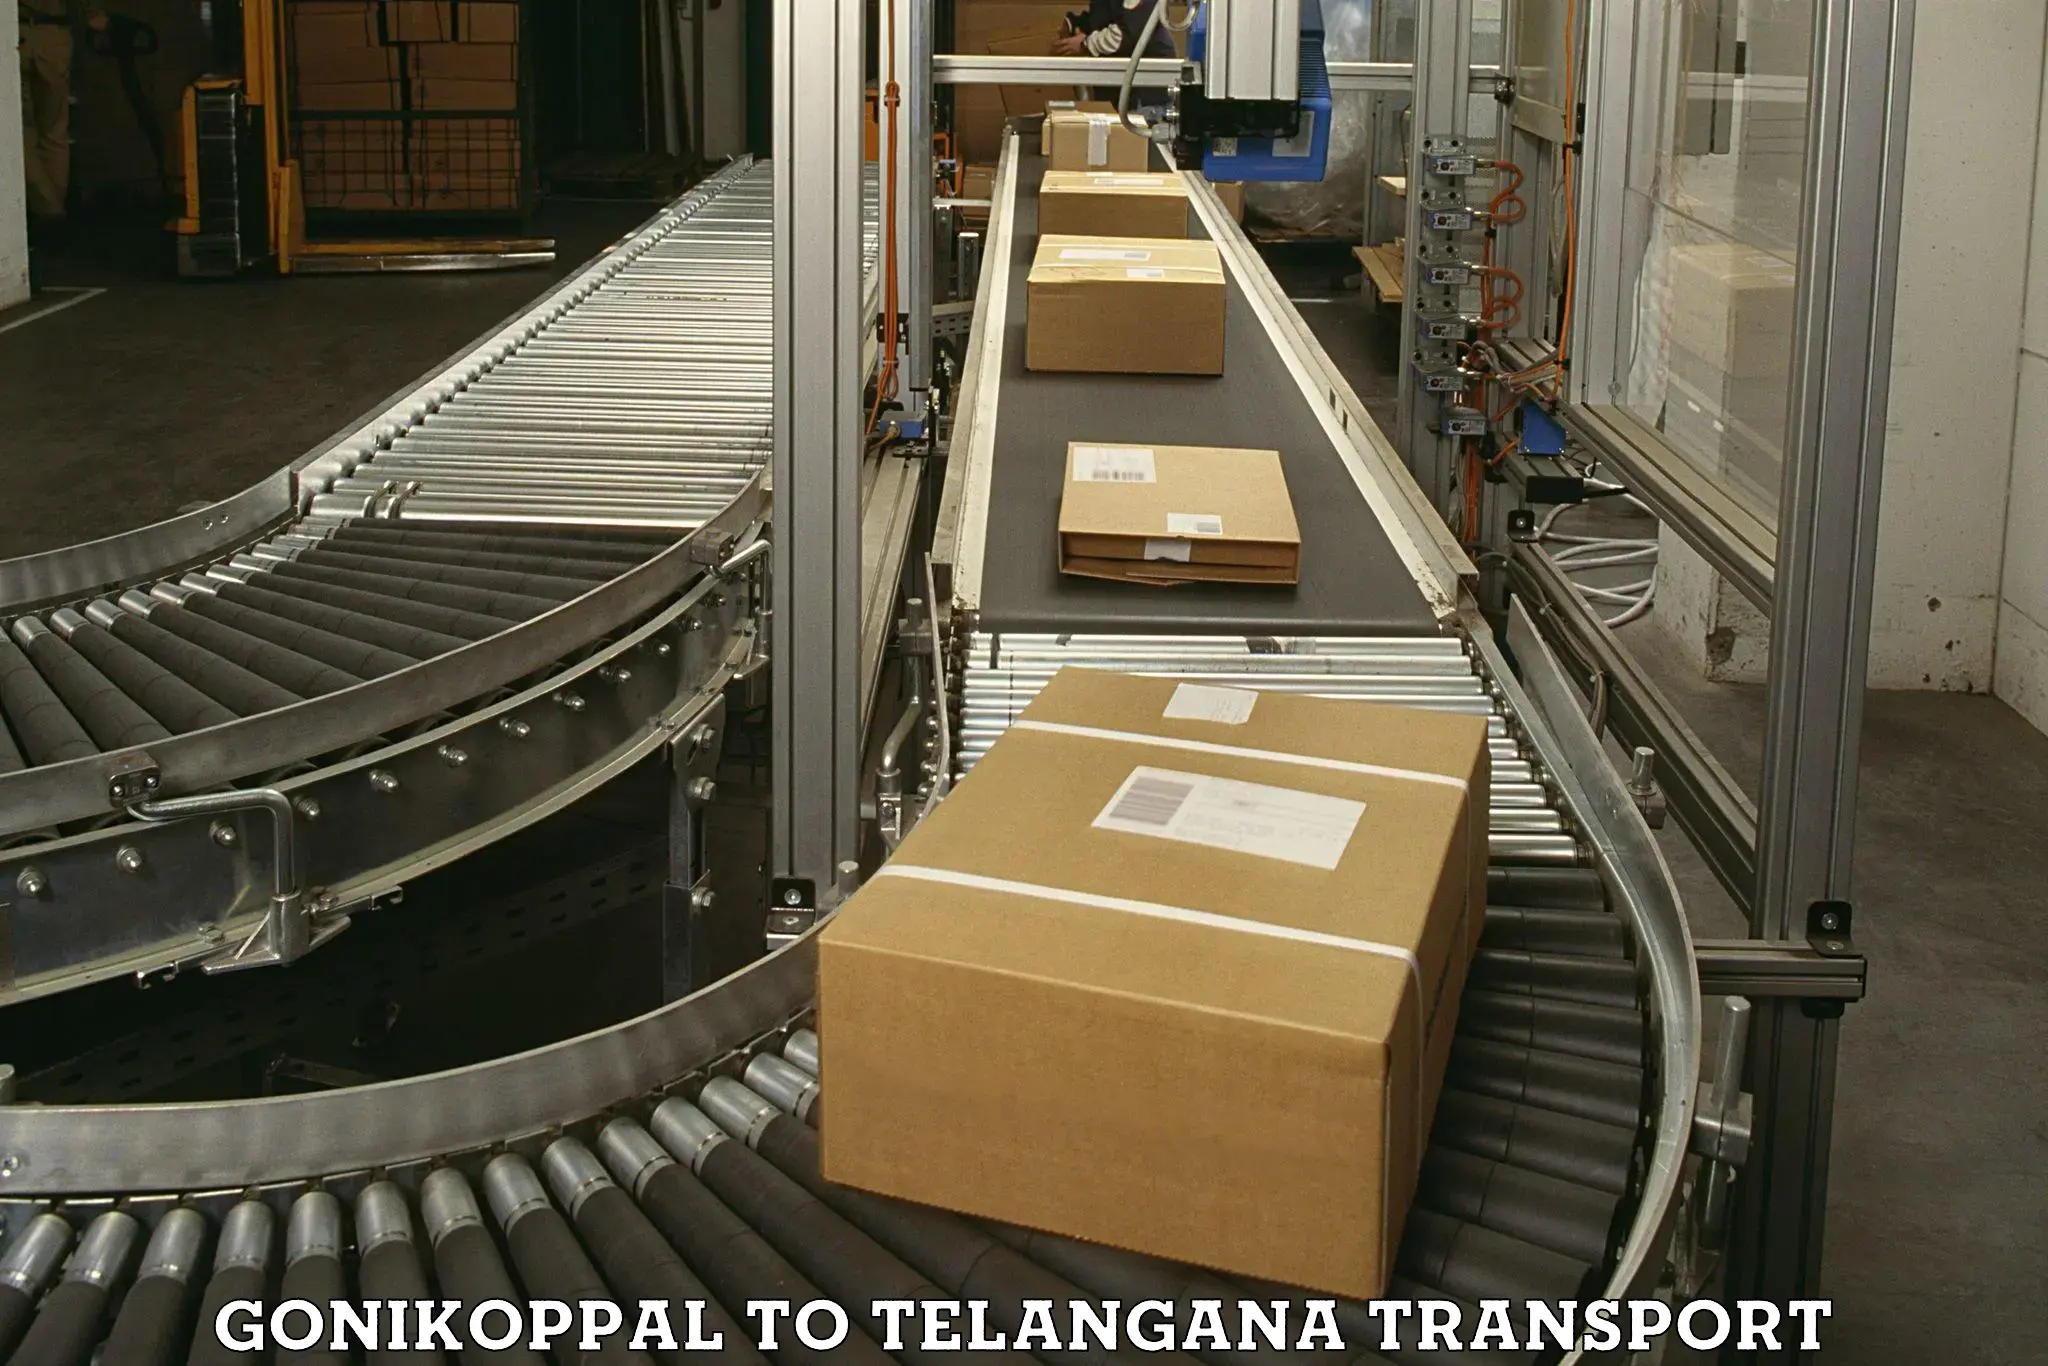 Nearest transport service in Gonikoppal to Bellampalli